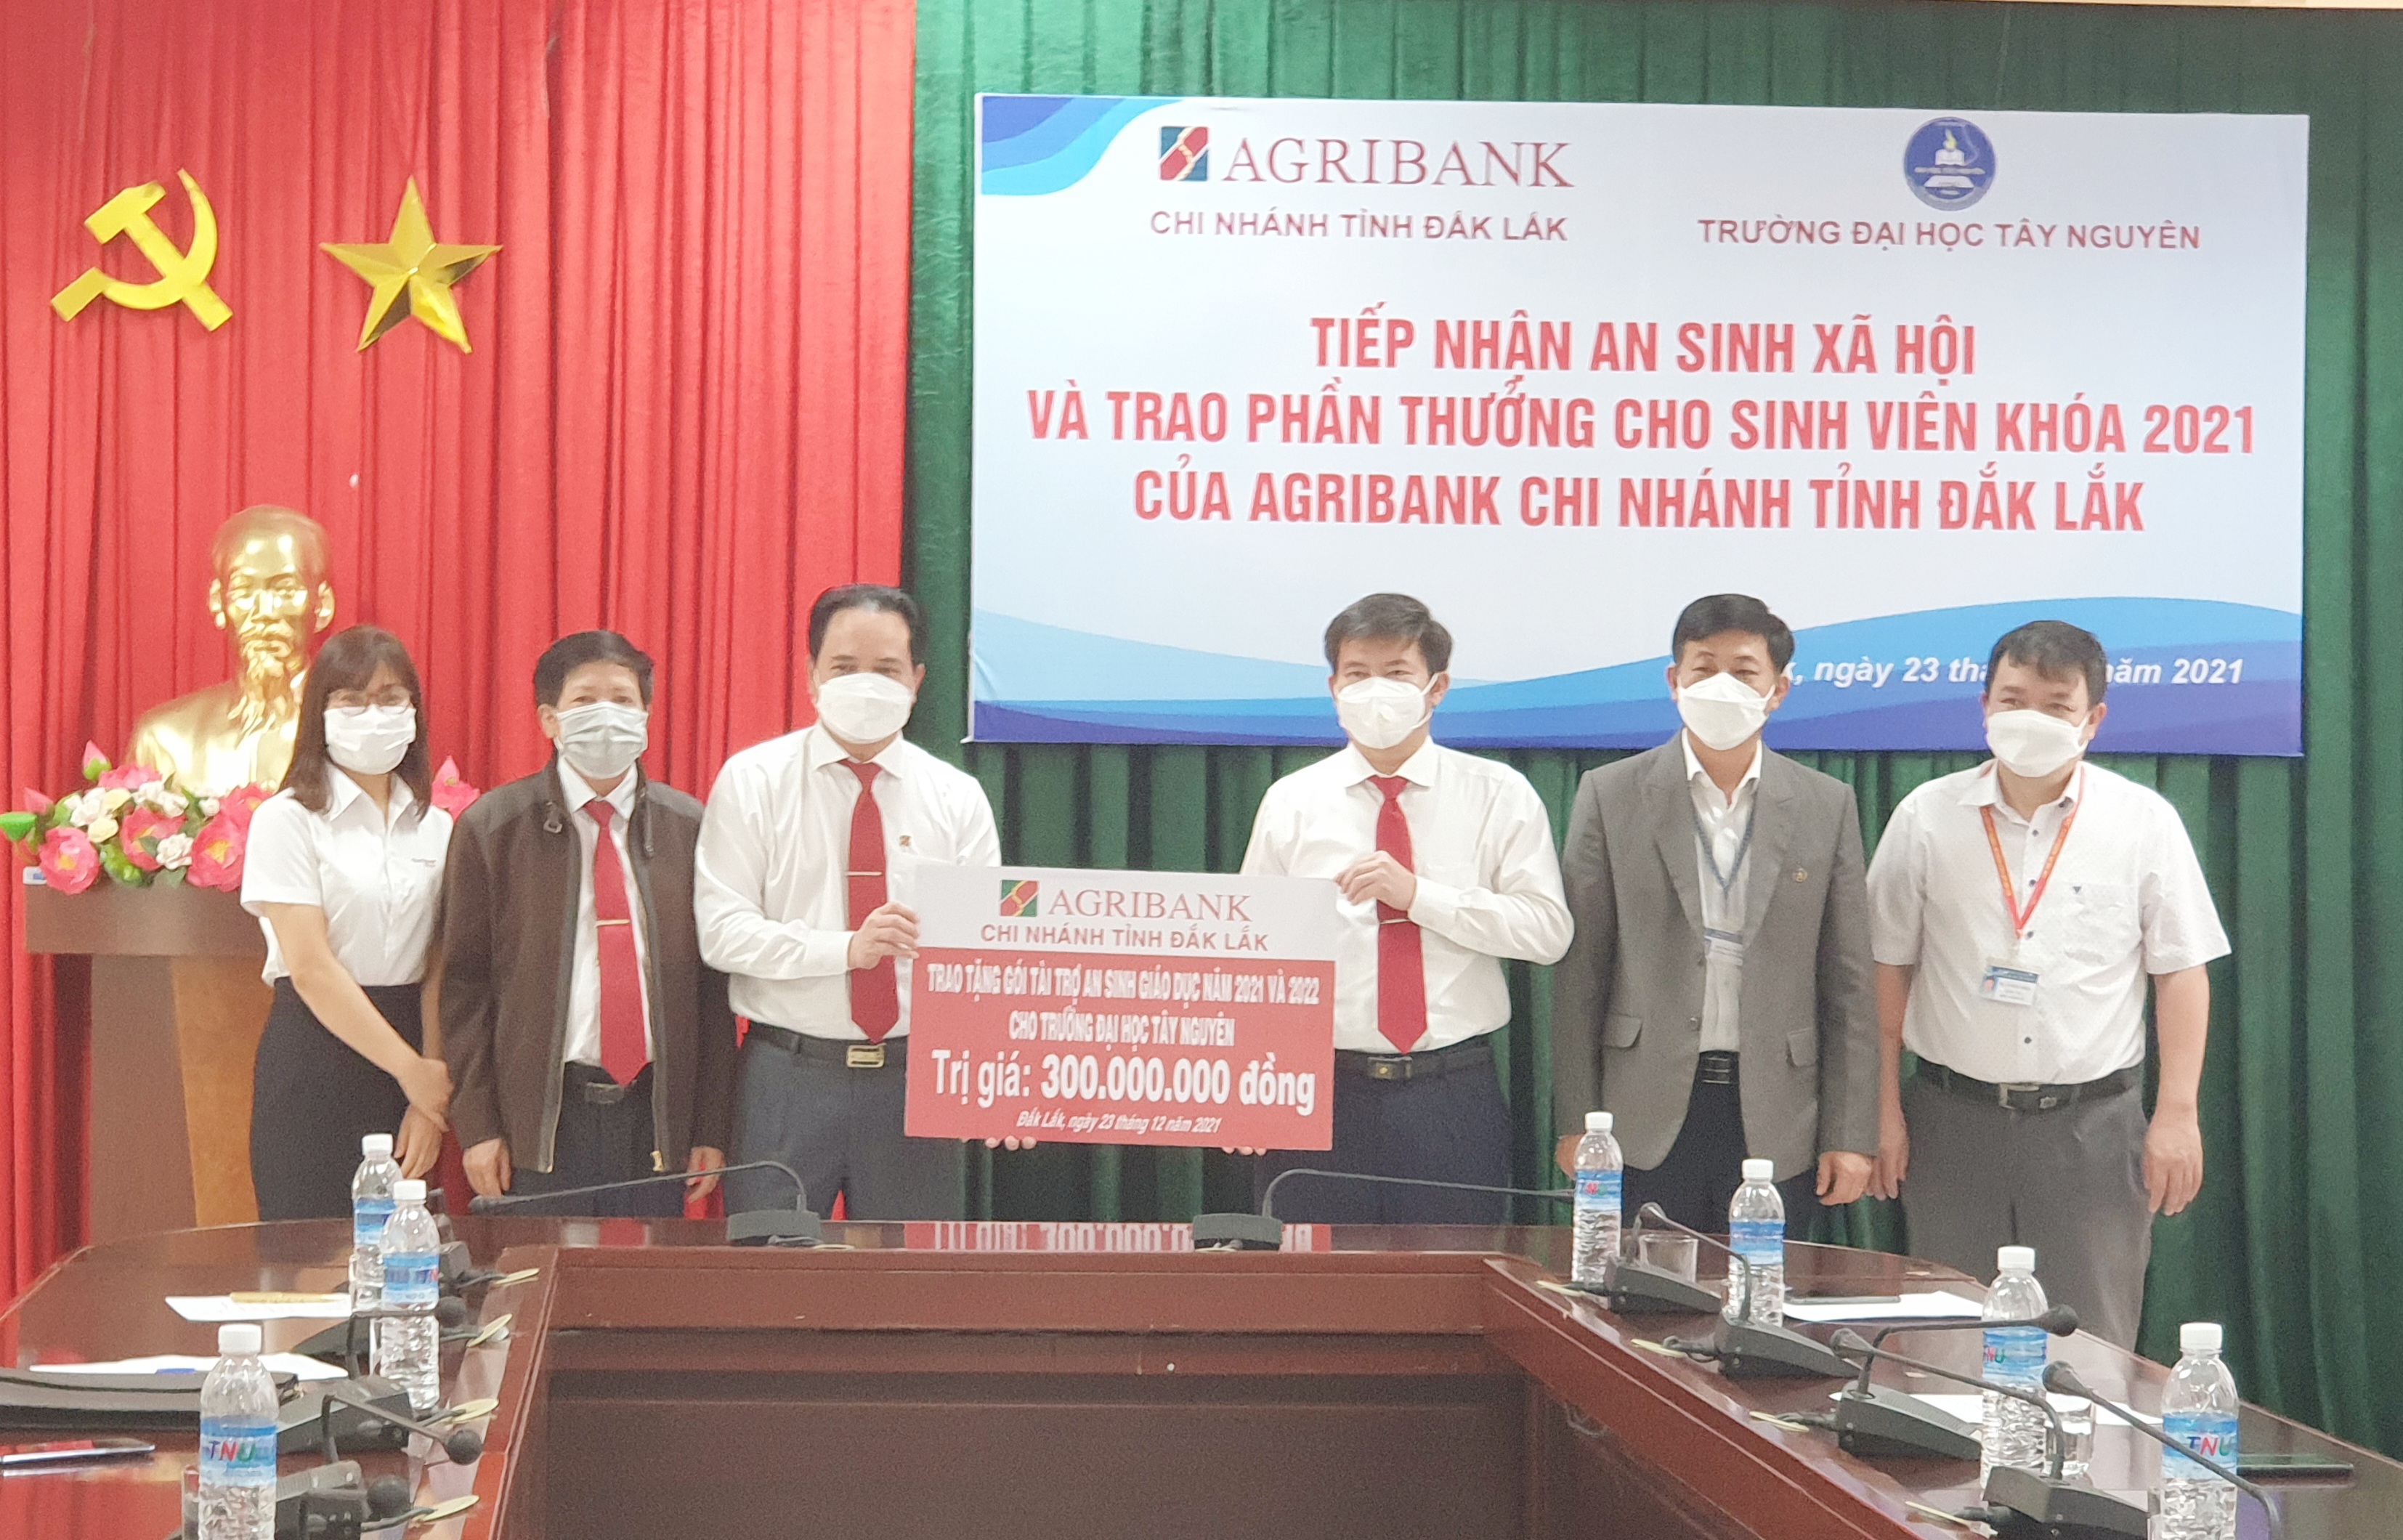 Agribank tỉnh Đắk Lắk trao tặng gói “An sinh xã hội” cho Trường Đại học Tây Nguyên